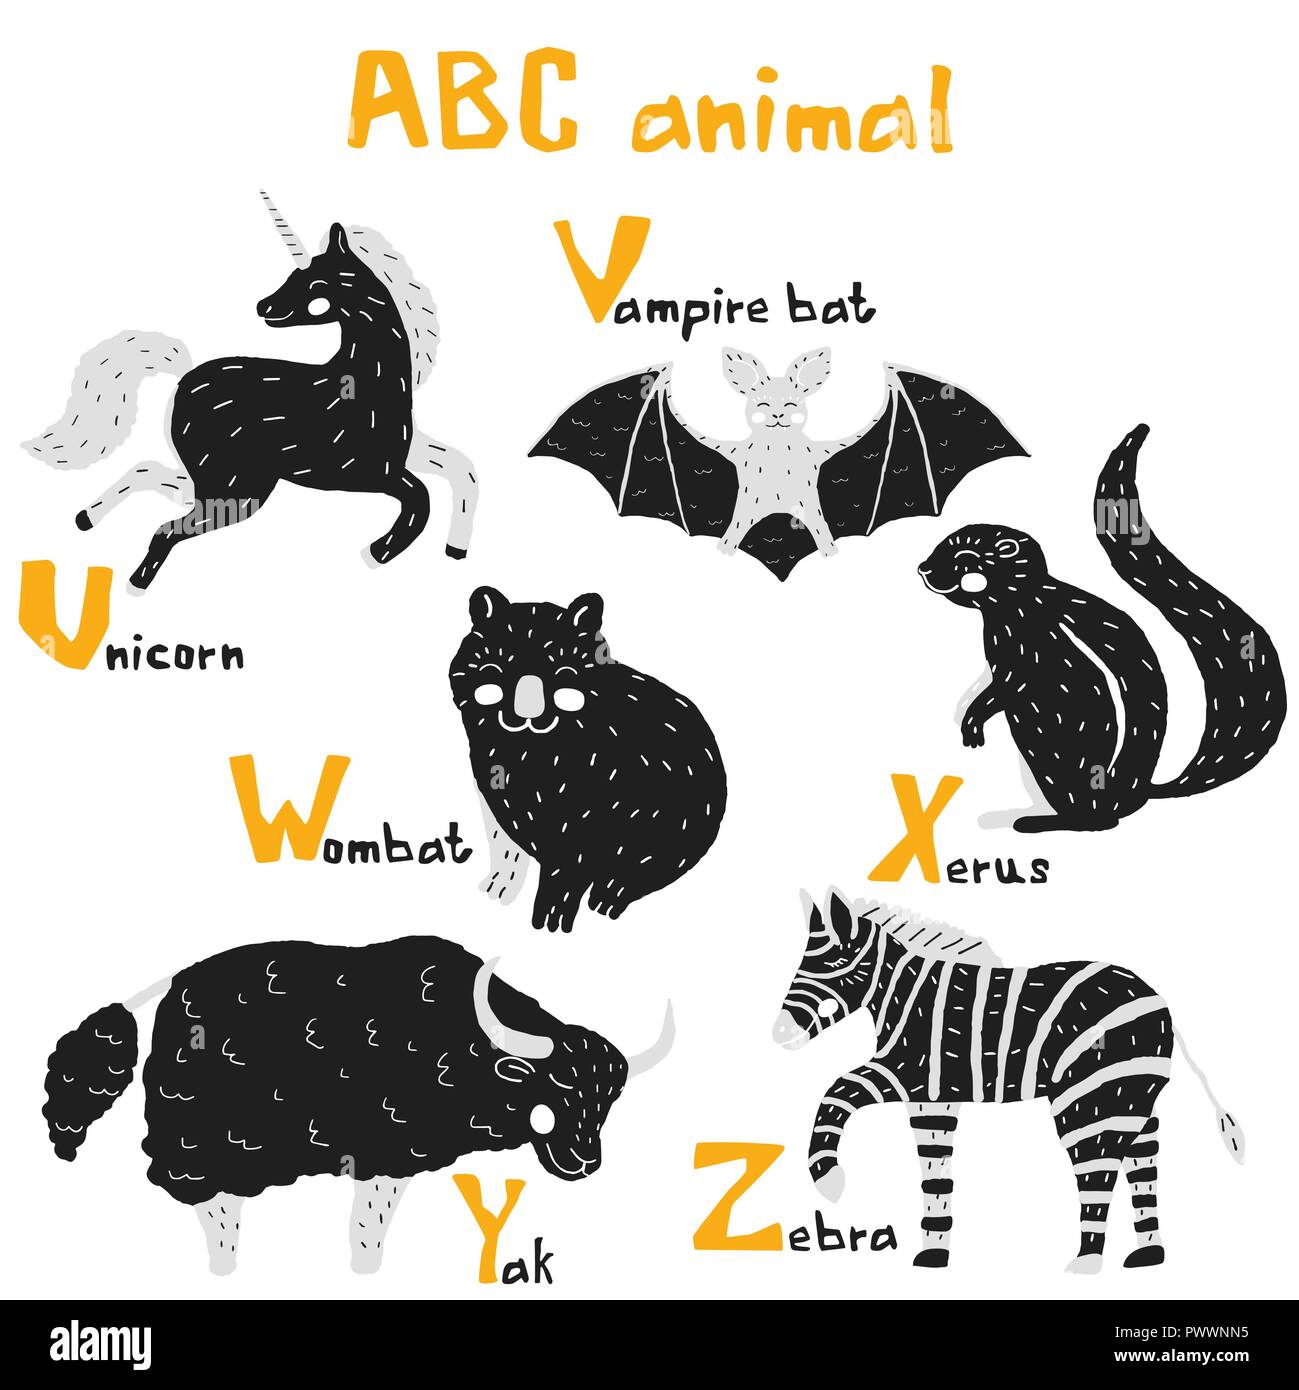 Vektor Hand gezeichnet cute abc Alphabet Tier skandinavisches Design, Zebra, Vampir Fledermaus, Einhorn, Wombat, Xerus, Yak Stock Vektor